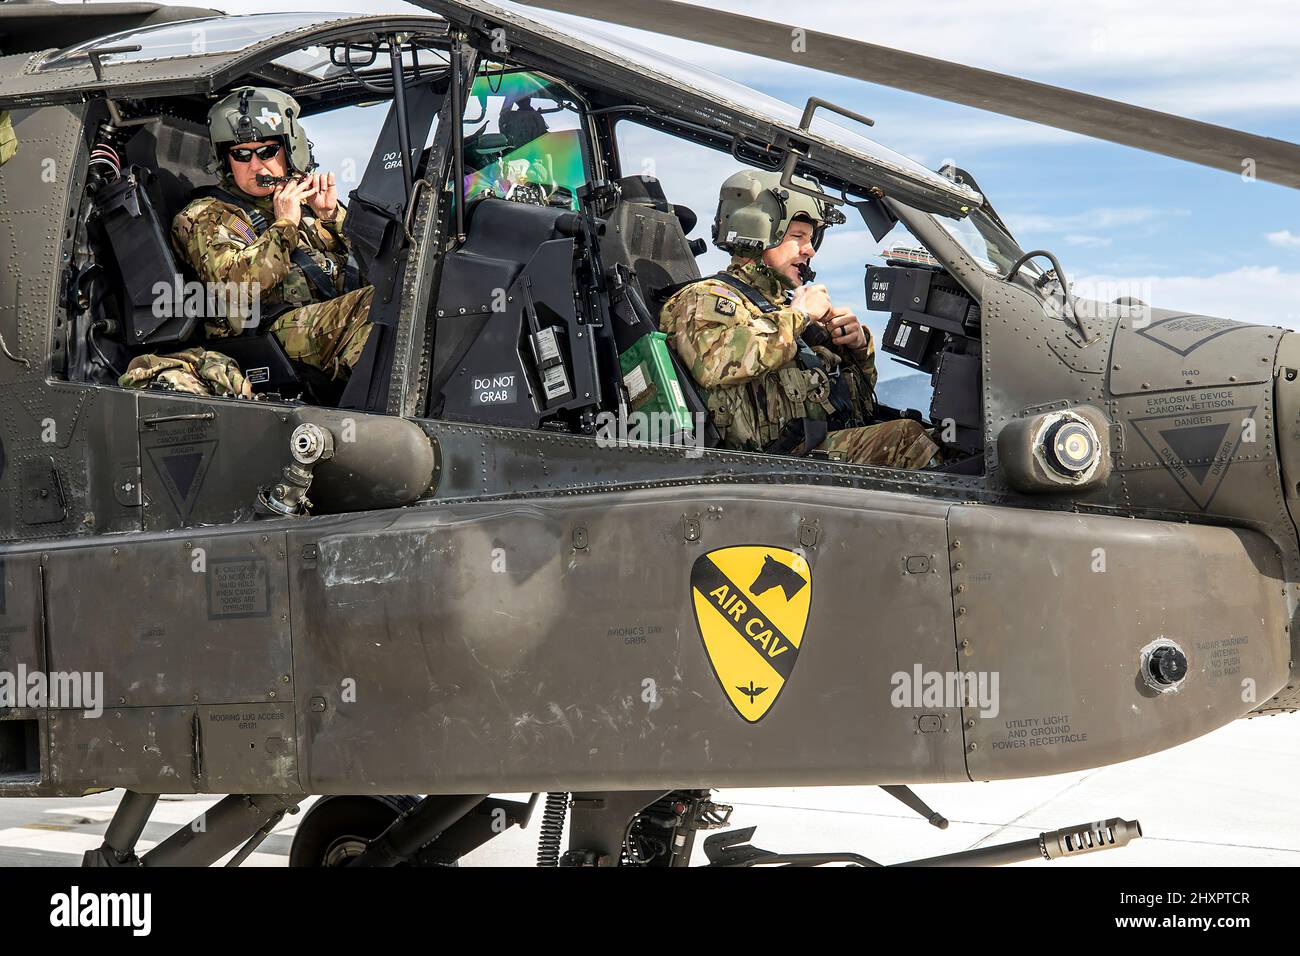 Die 1st Air Cavalry Brigade, die sich in Europa für Atlantic Resolve befindet, verlegt AH64 Apaches und UH60 Blackhawks von Griechenland nach Polen, um die Entscheidung der Vereinigten Staaten zu unterstützen, ihre Präsenz und Aktivitäten in Europa im Rahmen ihres starken und unermüdlichen Engagements gegenüber unseren NATO-Verbündeten und -Partnern zu verstärken. Stockfoto